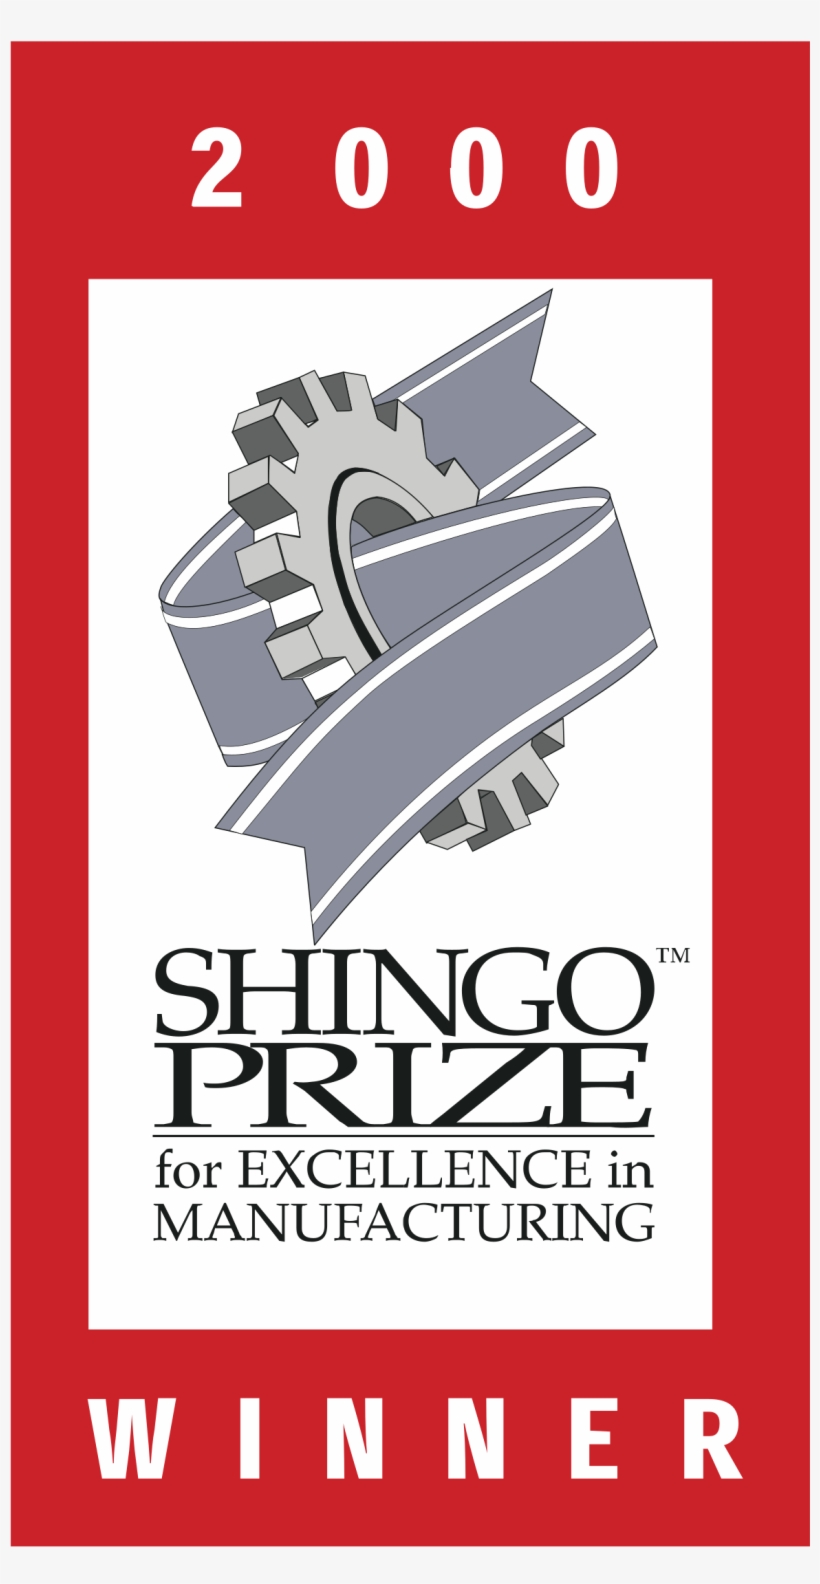 Shingo Prize Logo Png Transparent - Shingo Prize, transparent png #2359631